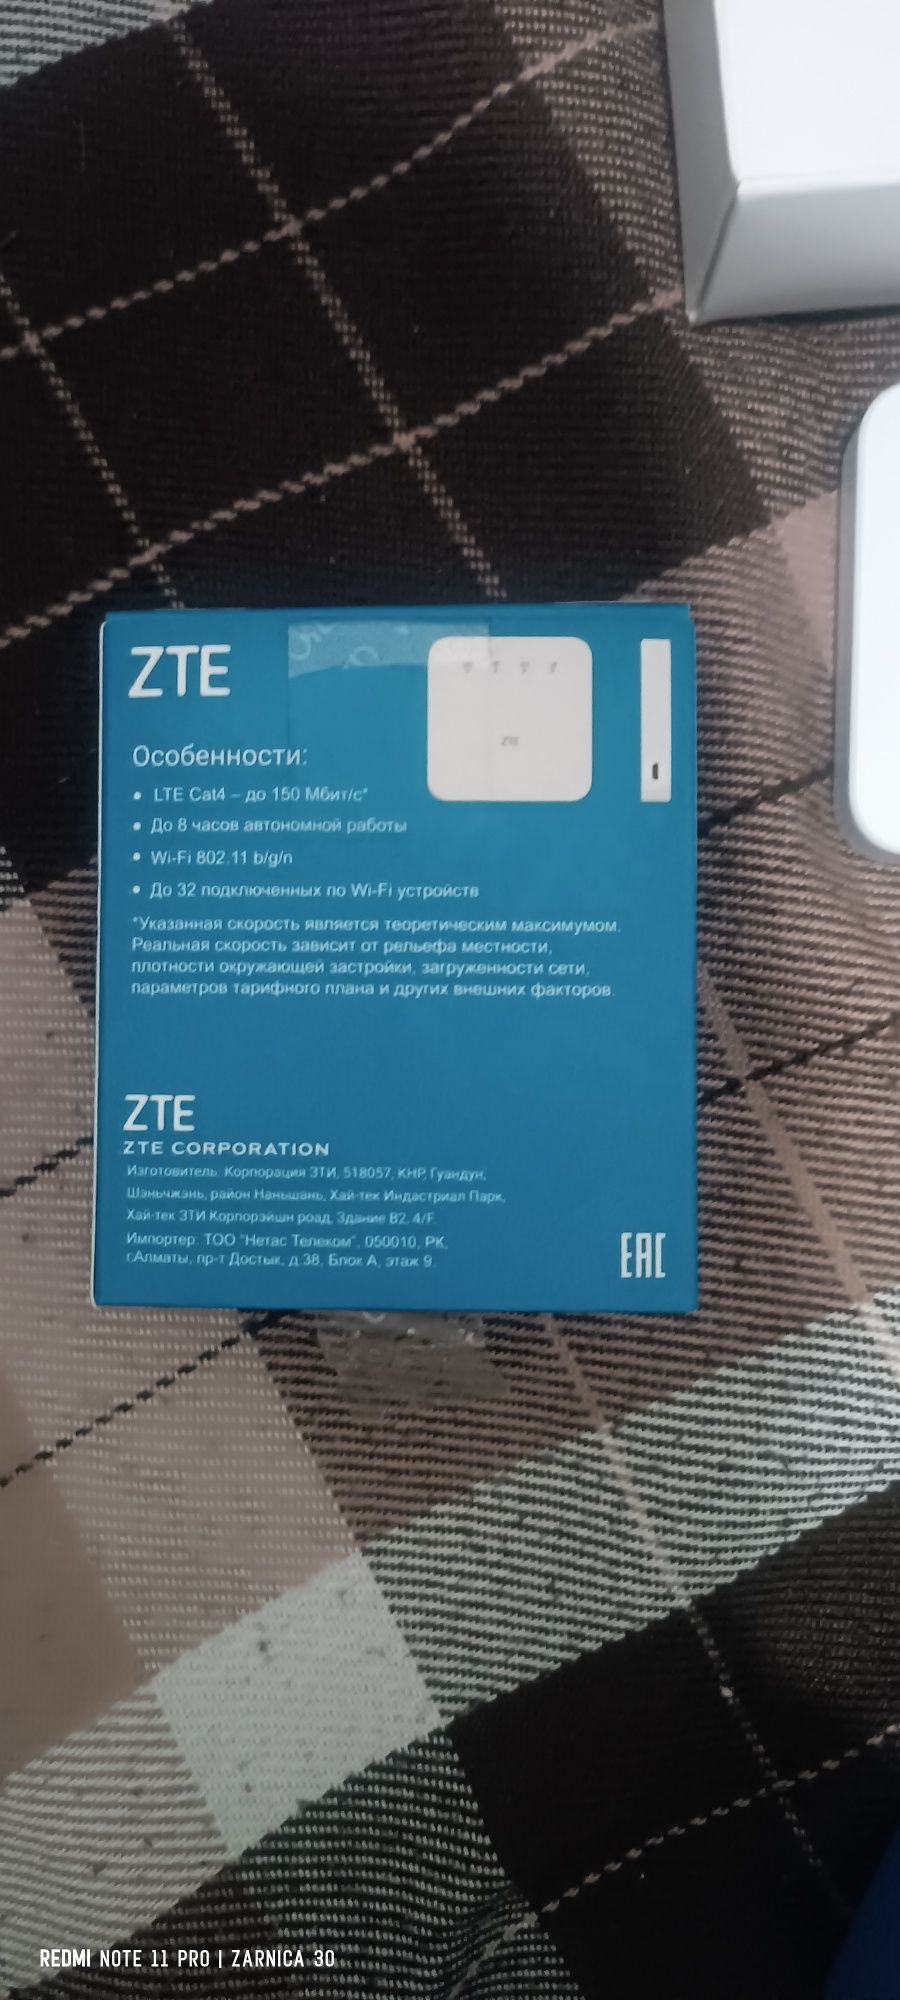 Wi-Fi роутер ZTE MF927U, кол-во 2 ед.